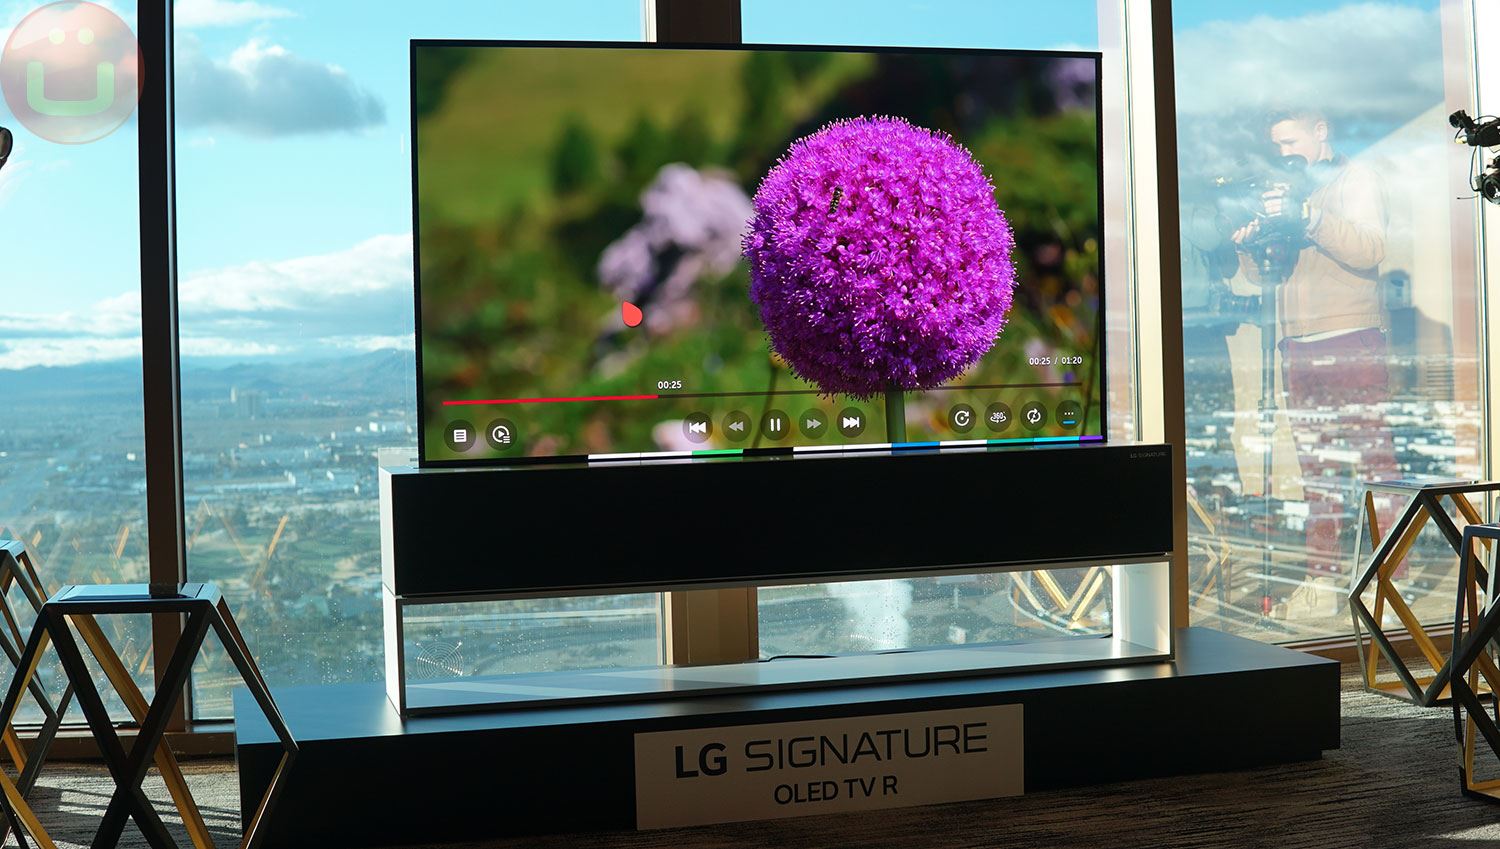 LG Signature Series OLED TV R (65R9)